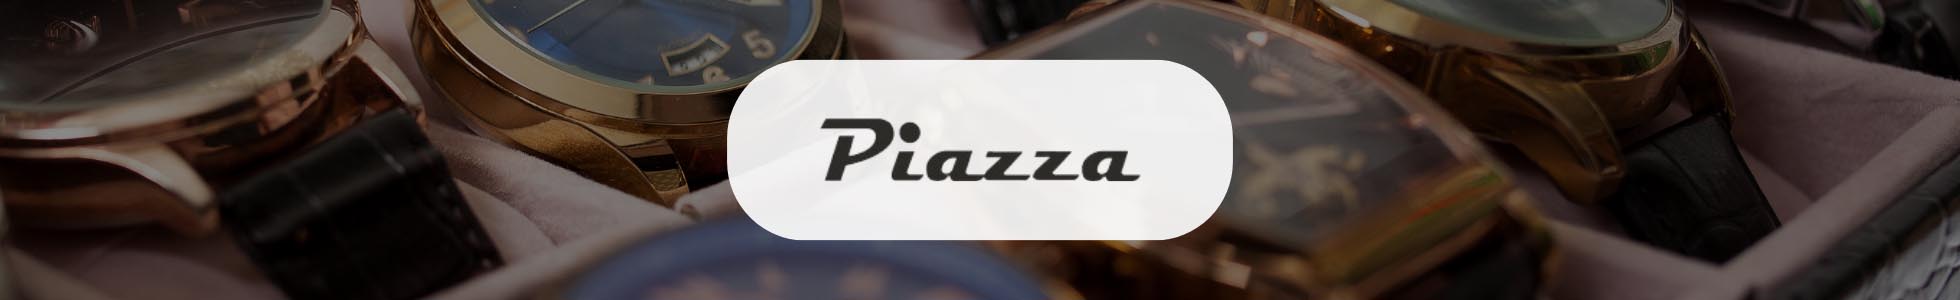 Ottica Piazza San Marino - Shop online occhiali, orologi, gioielli